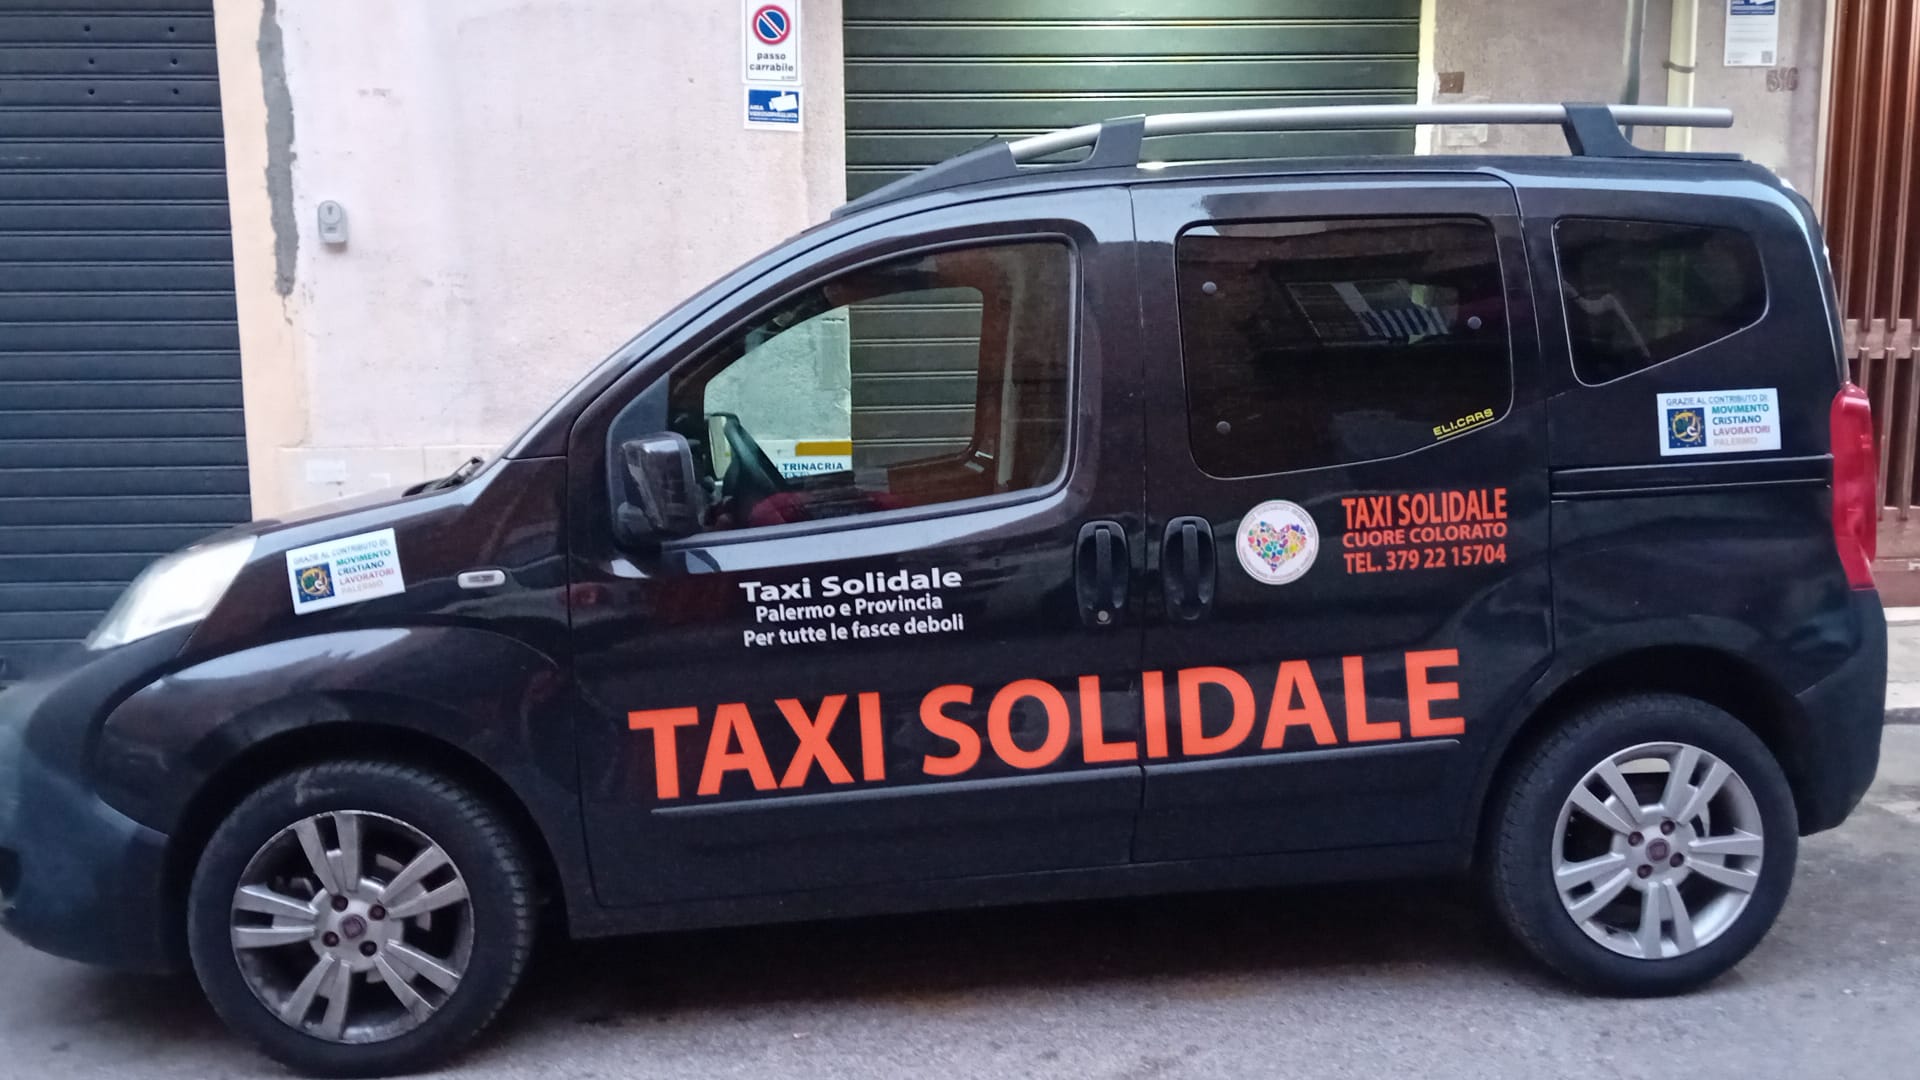 Taxi solidale per i più bisognosi, raccolta fondi per l’acquisto di due nuovi mezzi a Palermo